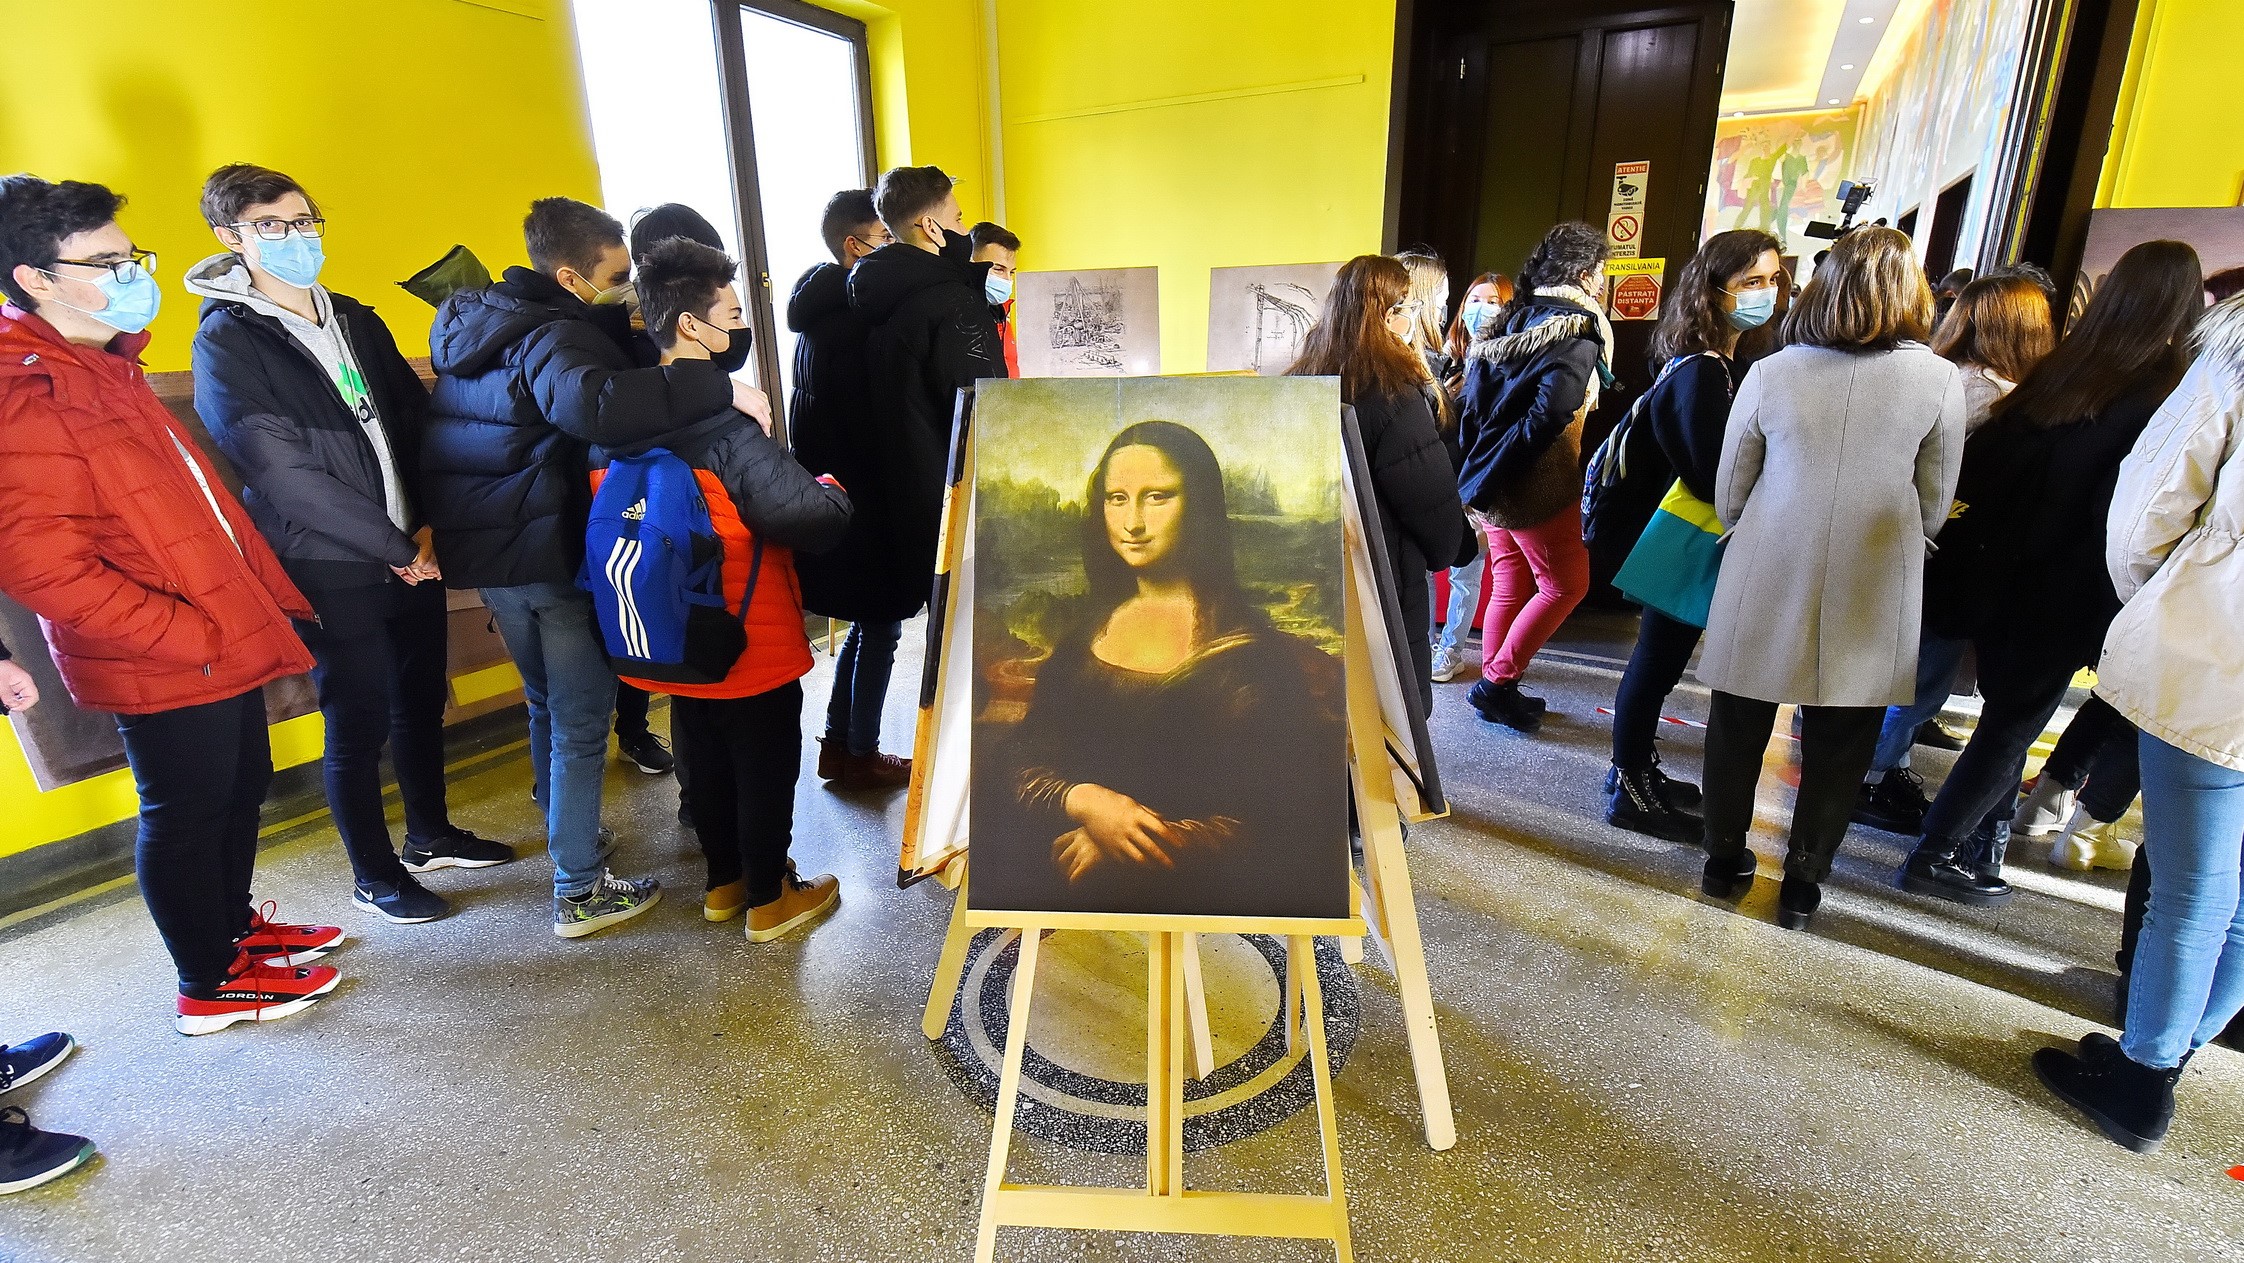 Mona Lisával is találkozhatunk a Diákművelődési Házban